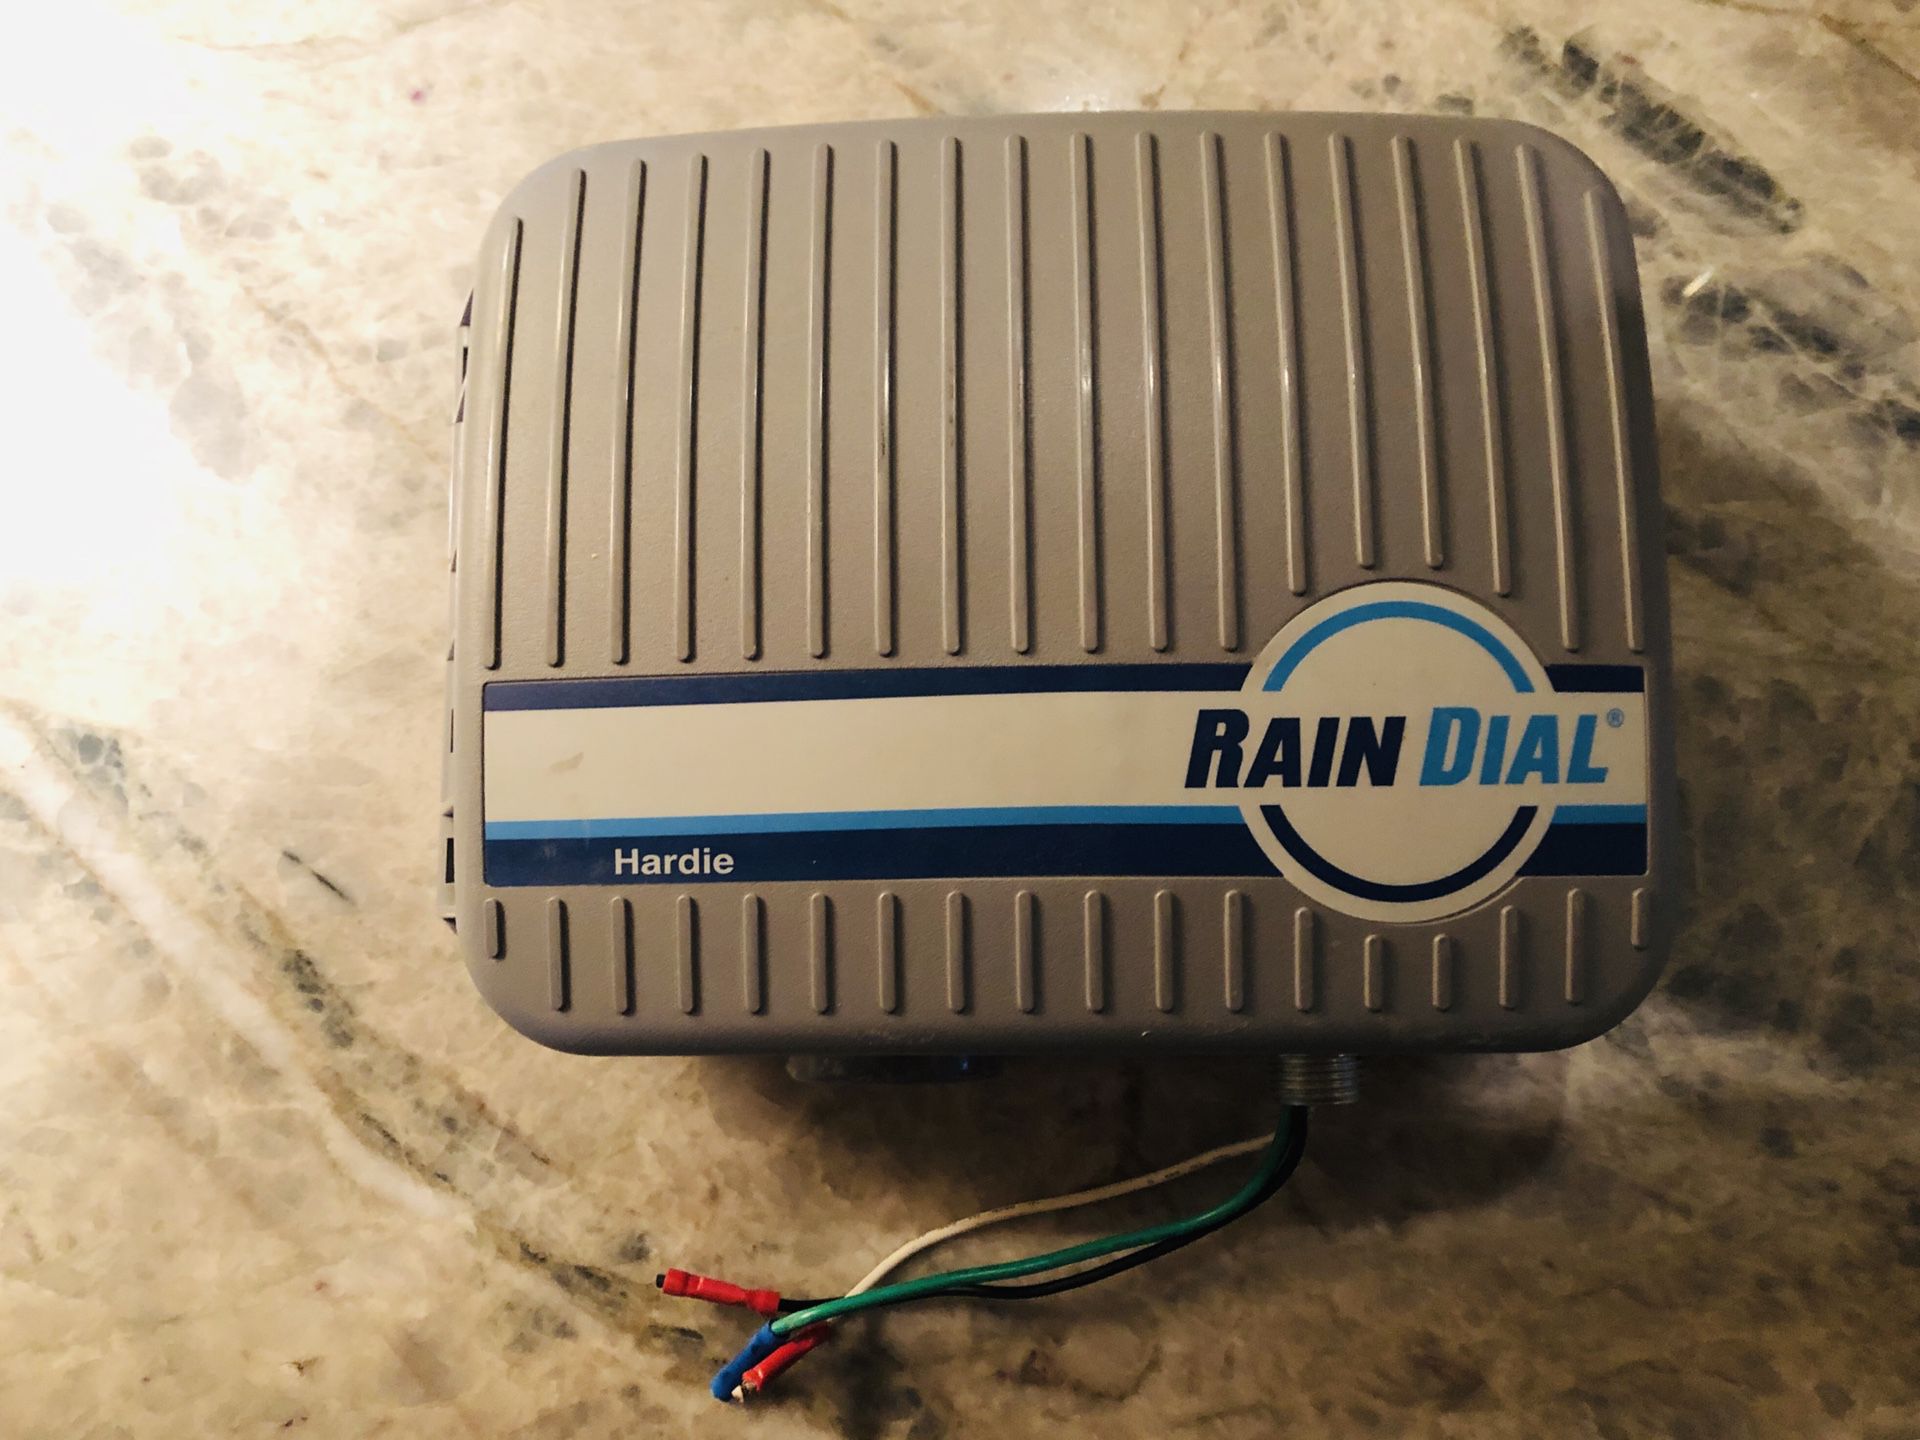 Rain dial sprinkler timer